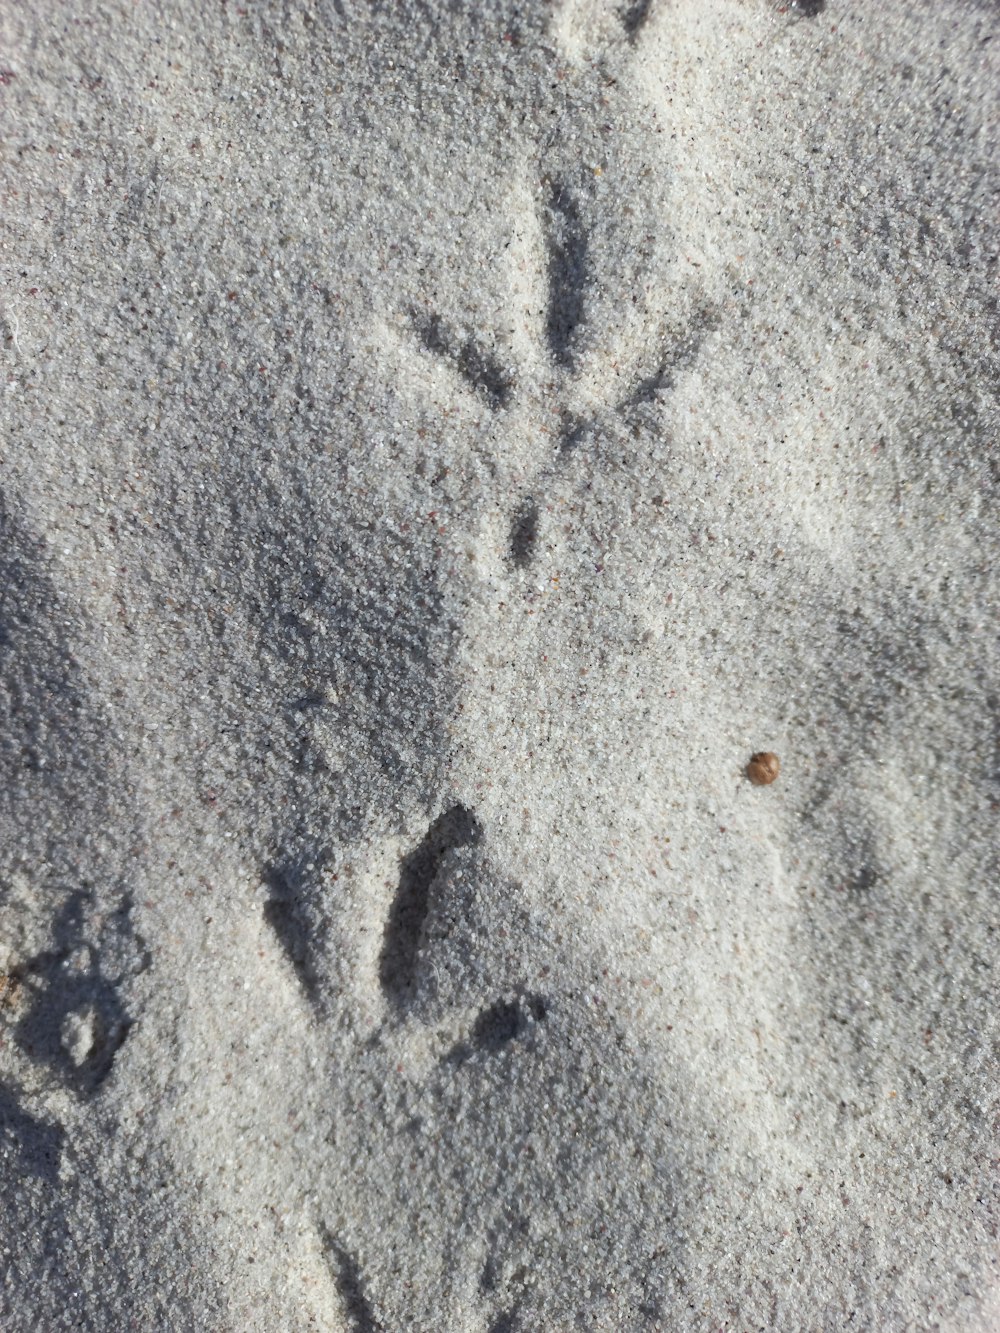 a bird's footprints in the sand on a beach